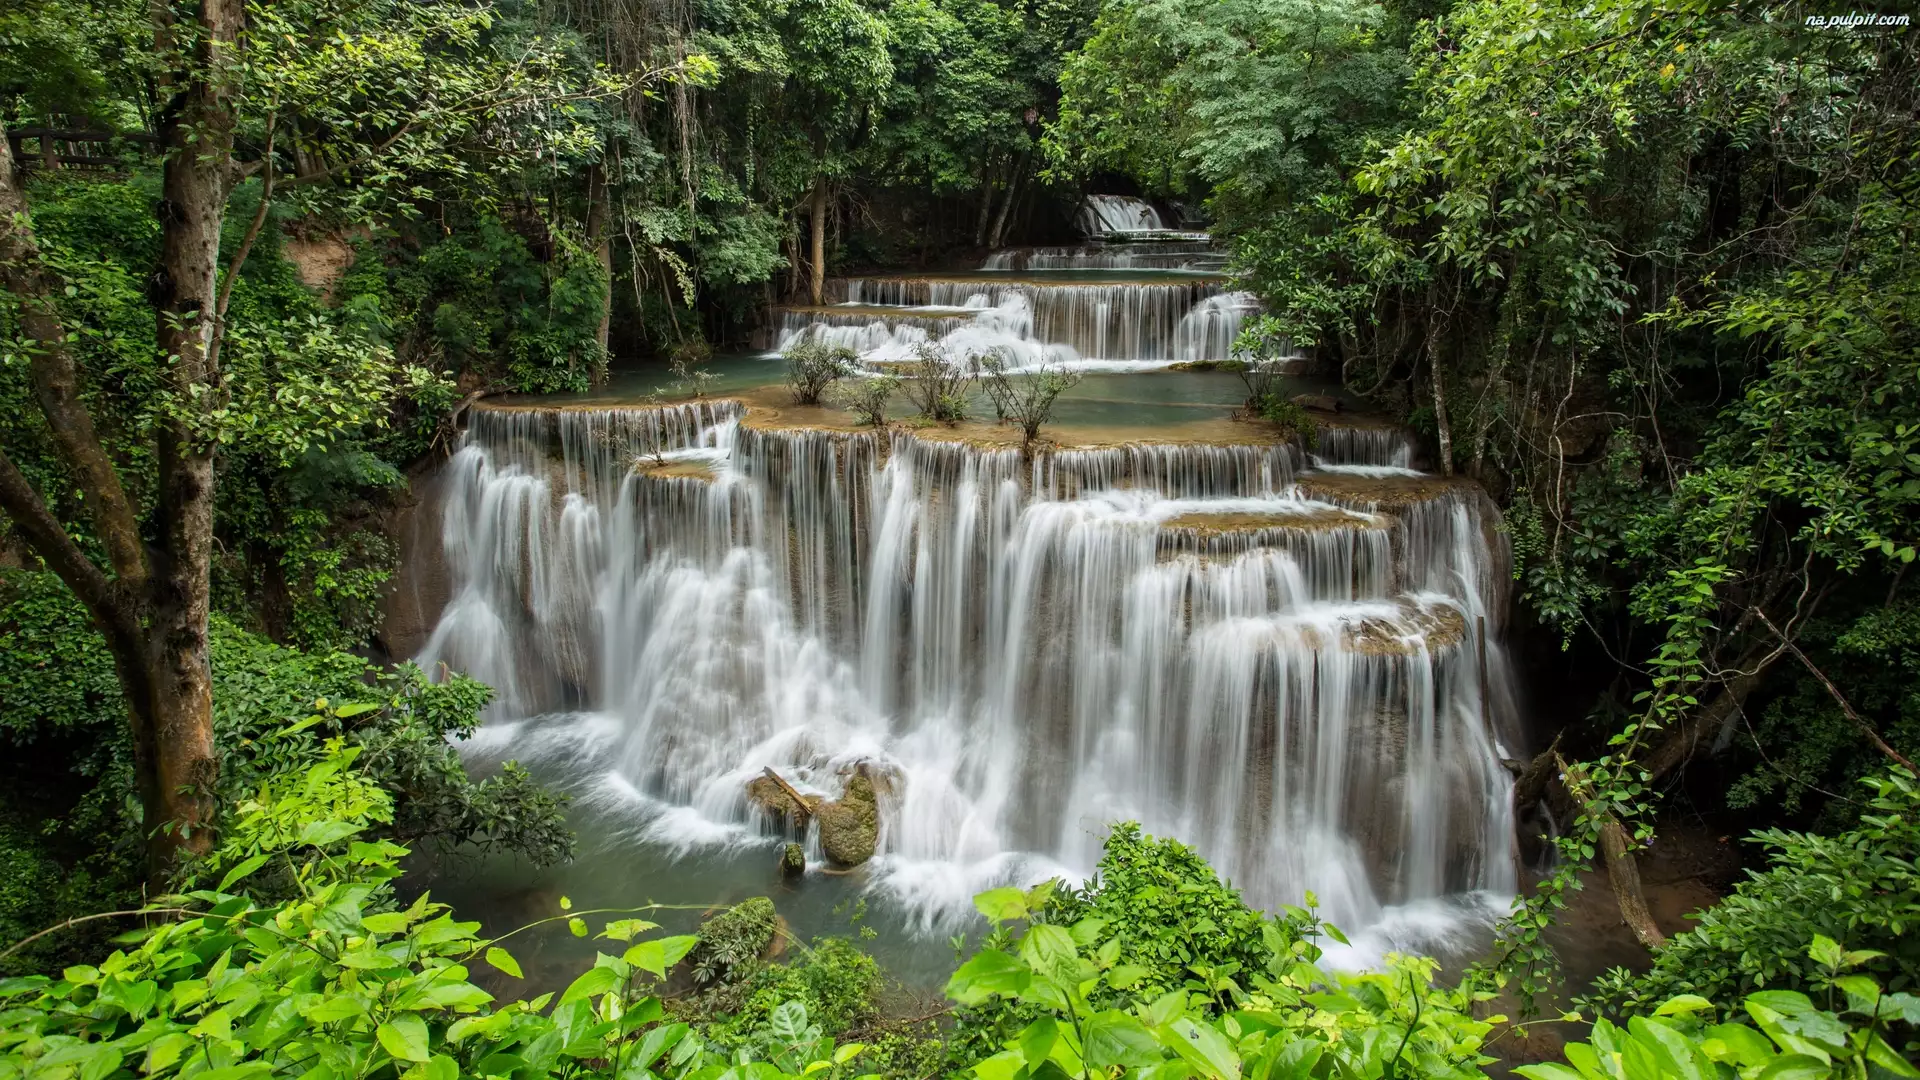 Kaskada, Wodospad Erawan waterfall, Park Narodowy Erawan, Tajlandia, Drzewa, Prowincja Kanchanaburi